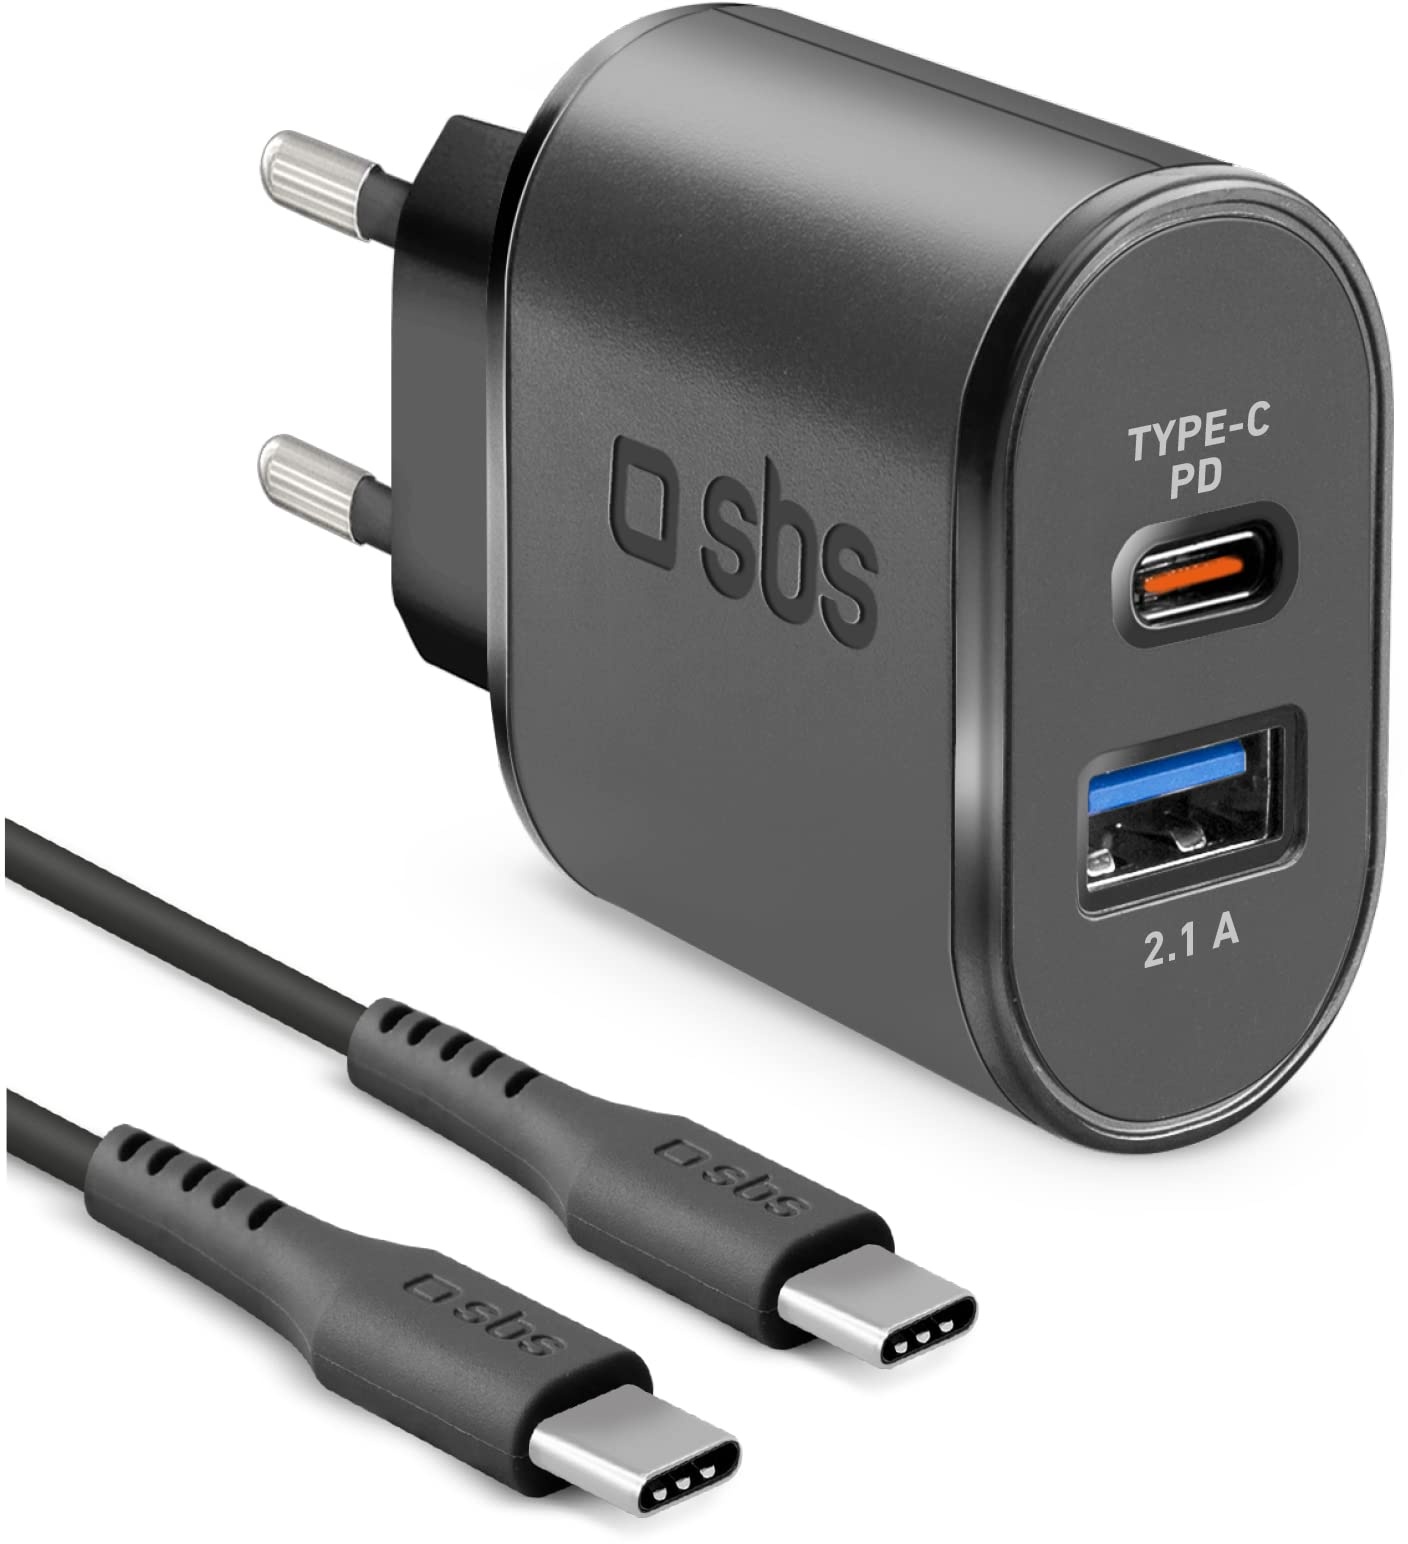 SBS 18W Fast Charge Travel Charger für iPhone, Samsung, Oppo, Xiaomi, Ladekit mit Power Delivery Ladegerät und USB-C auf USB-C Kabel, schwarz